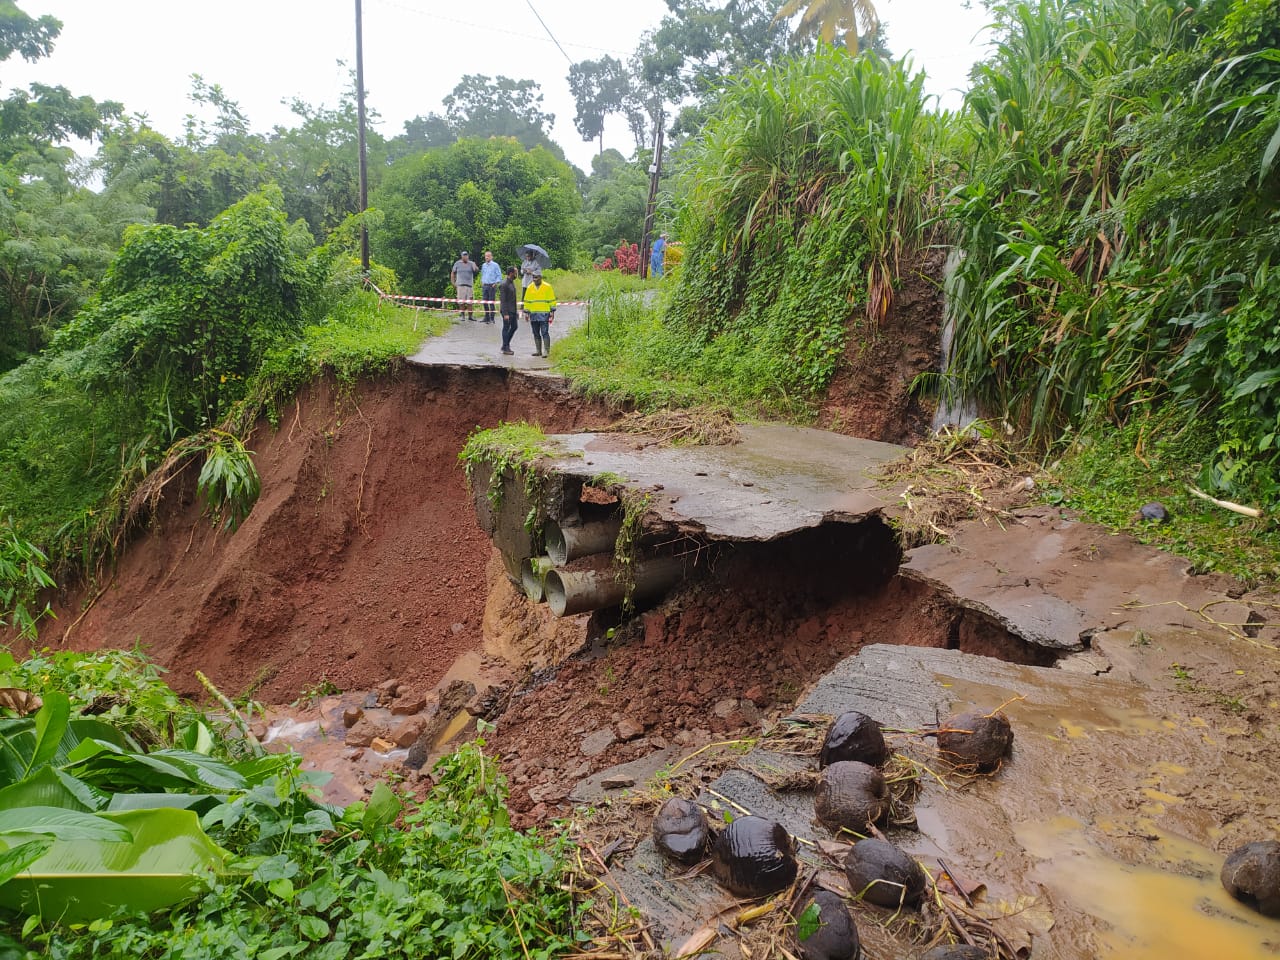     Glissements de terrain, routes détruites : les fortes pluies provoquent des dégâts en Martinique

